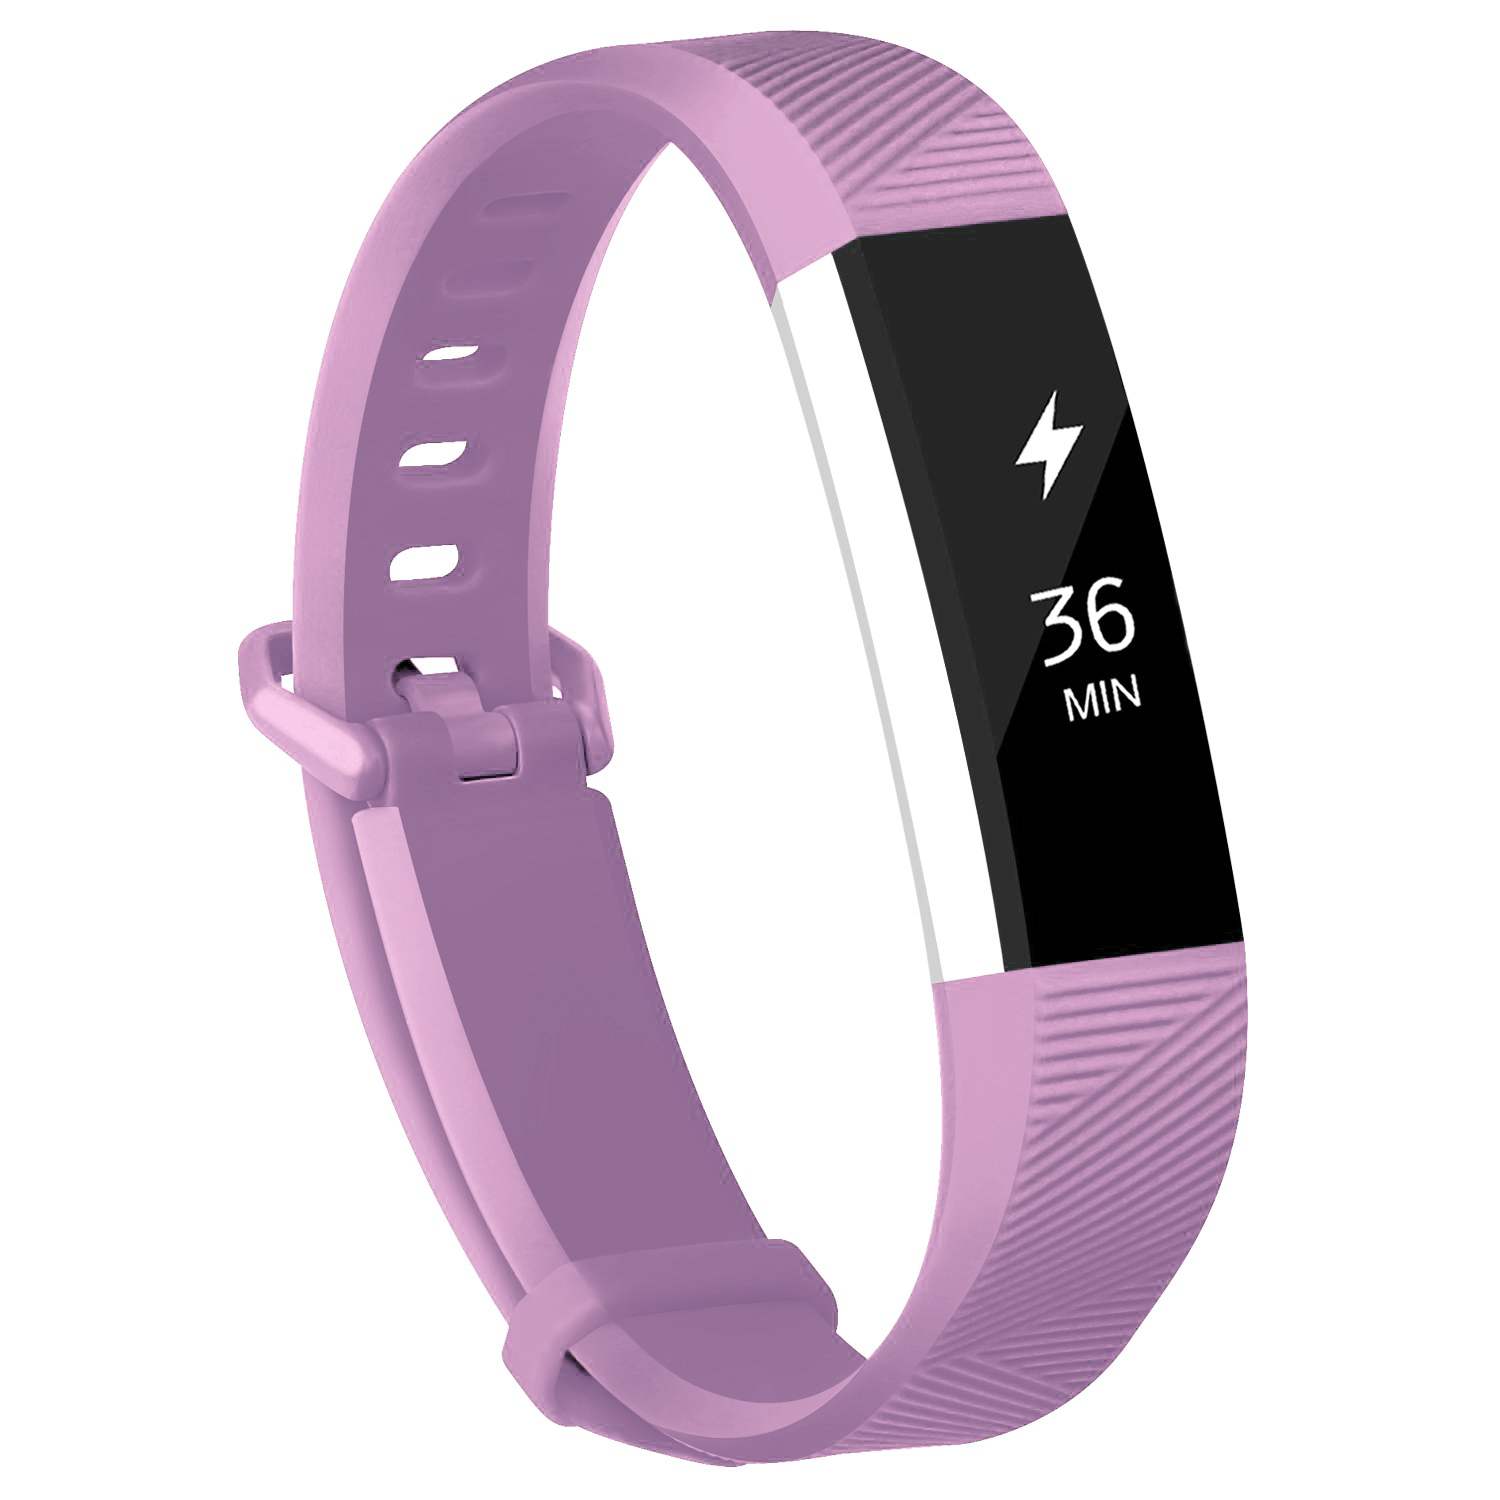  12色 シリコン時計バンド 交換 FitbitアルタHR リストバンド シリコンストラップ スマートリストバンド時計  | バリエーション:薄紫